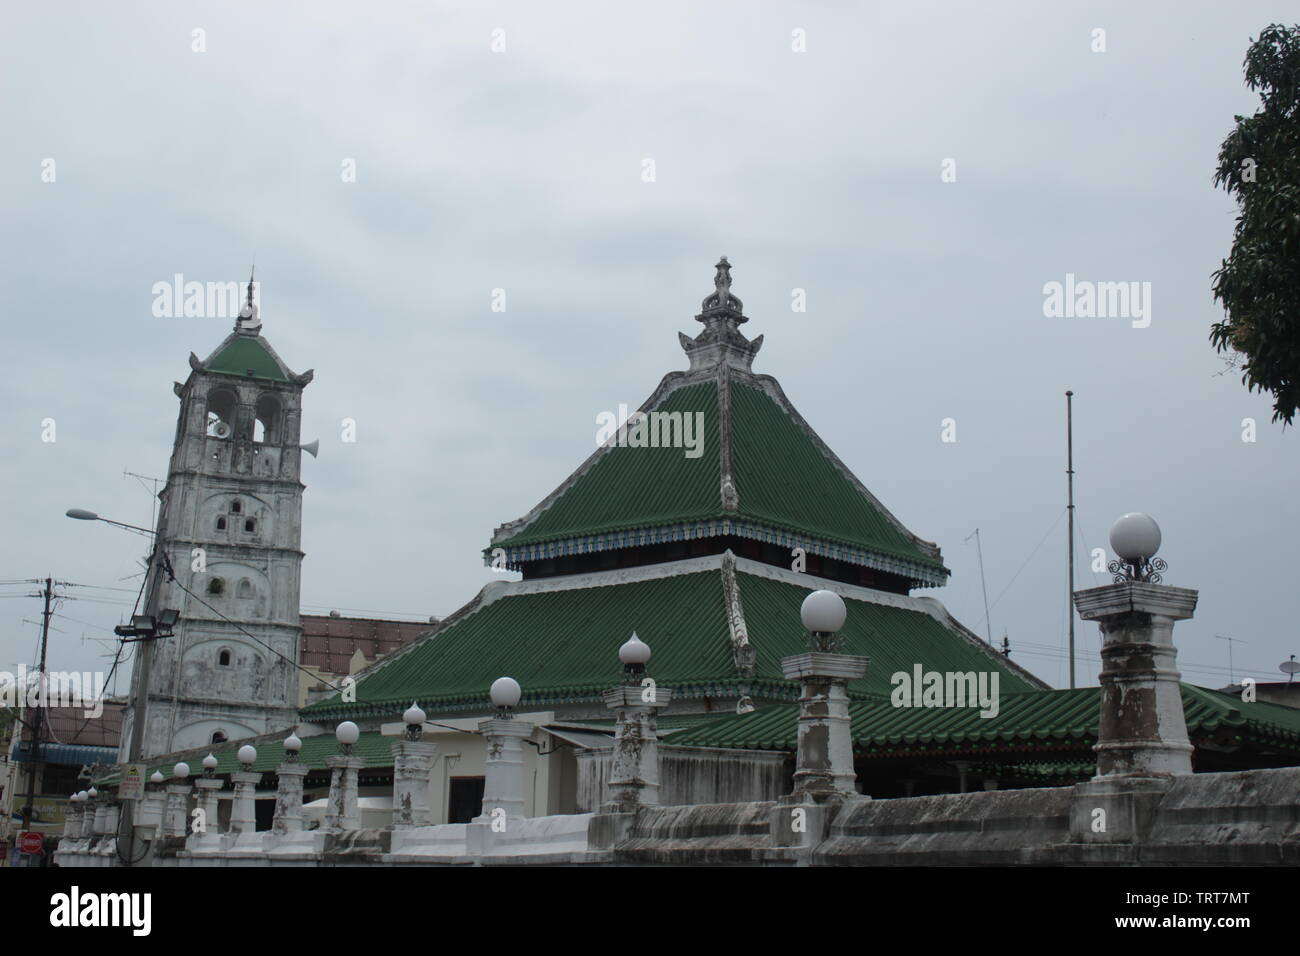 Masjid Kampung Kling Malacca City, Malaysia Stock Photo